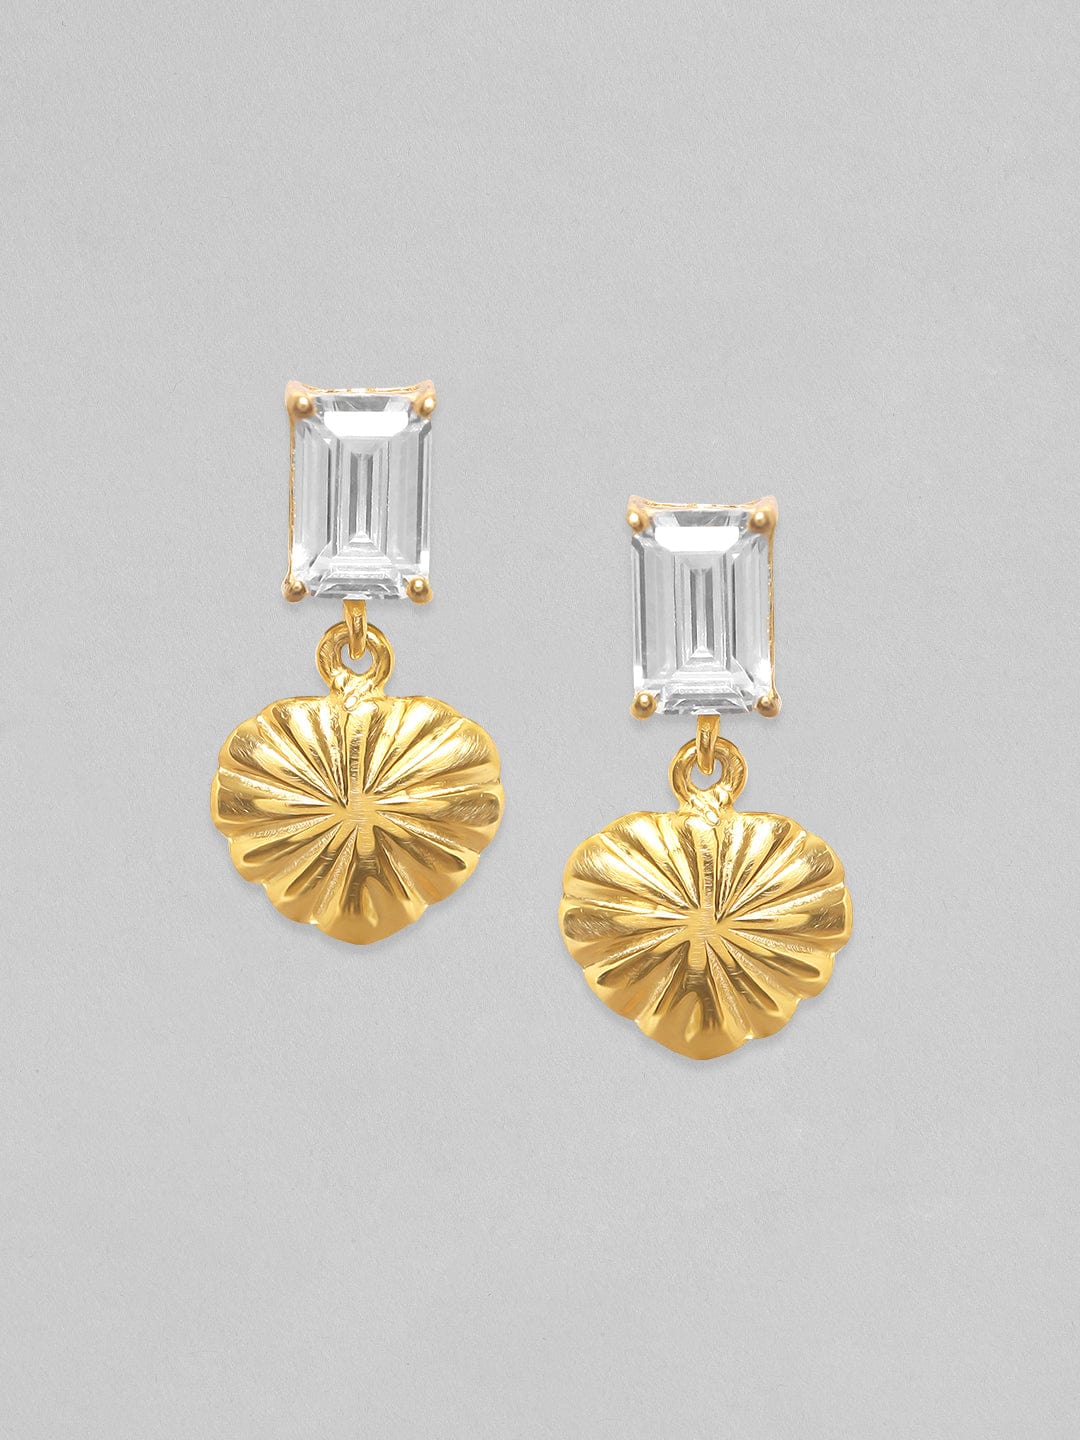 Rubans 925 Silver Gold Toned Zirconia Studded Heart Charm Dangle Earring Earrings